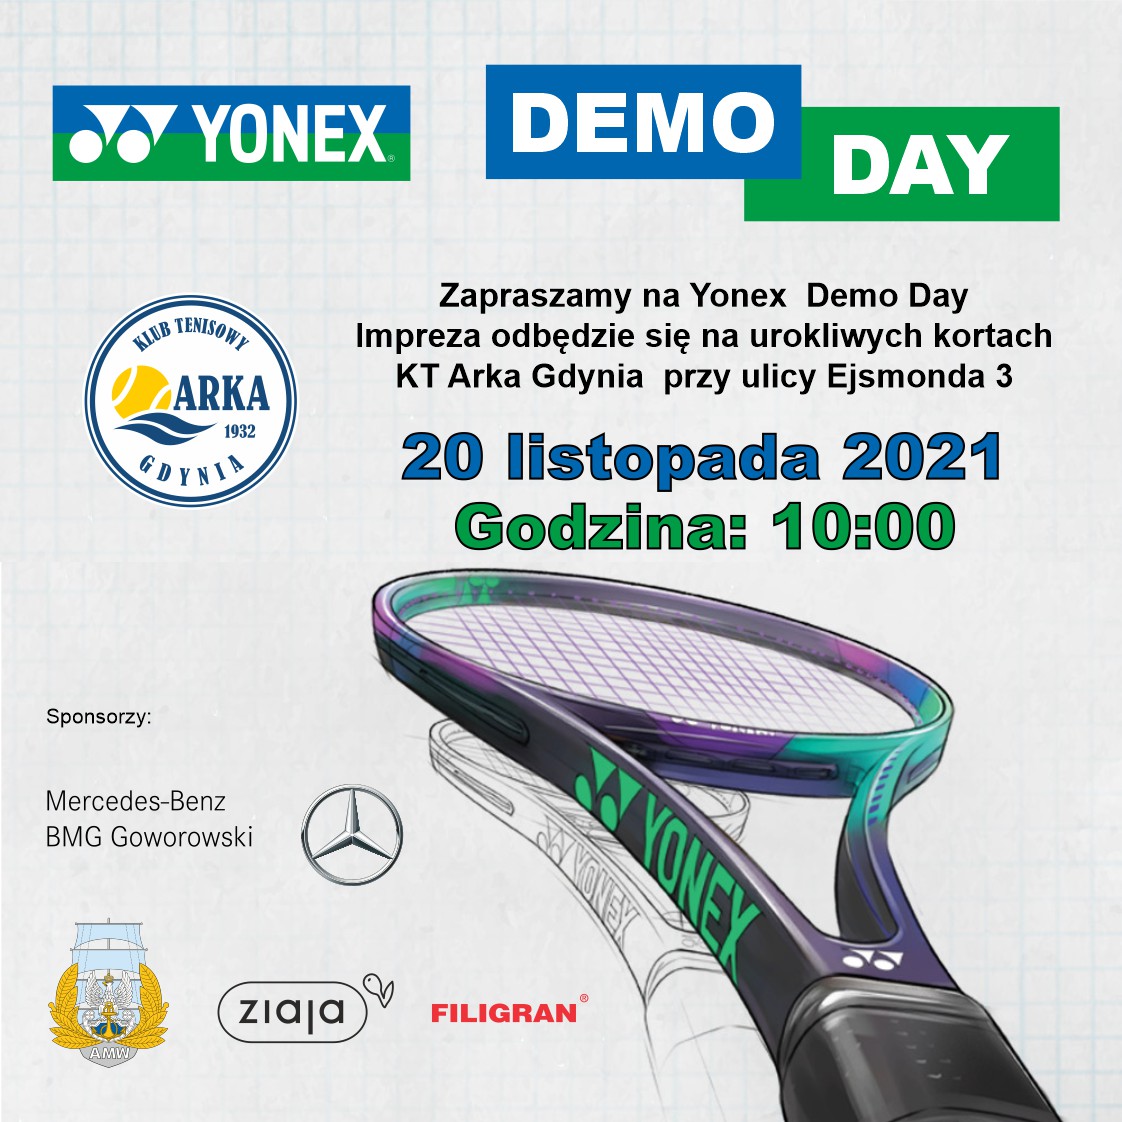 Przetestuj rakiety Hurkacza. Zapraszamy na Yonex Demo Day!